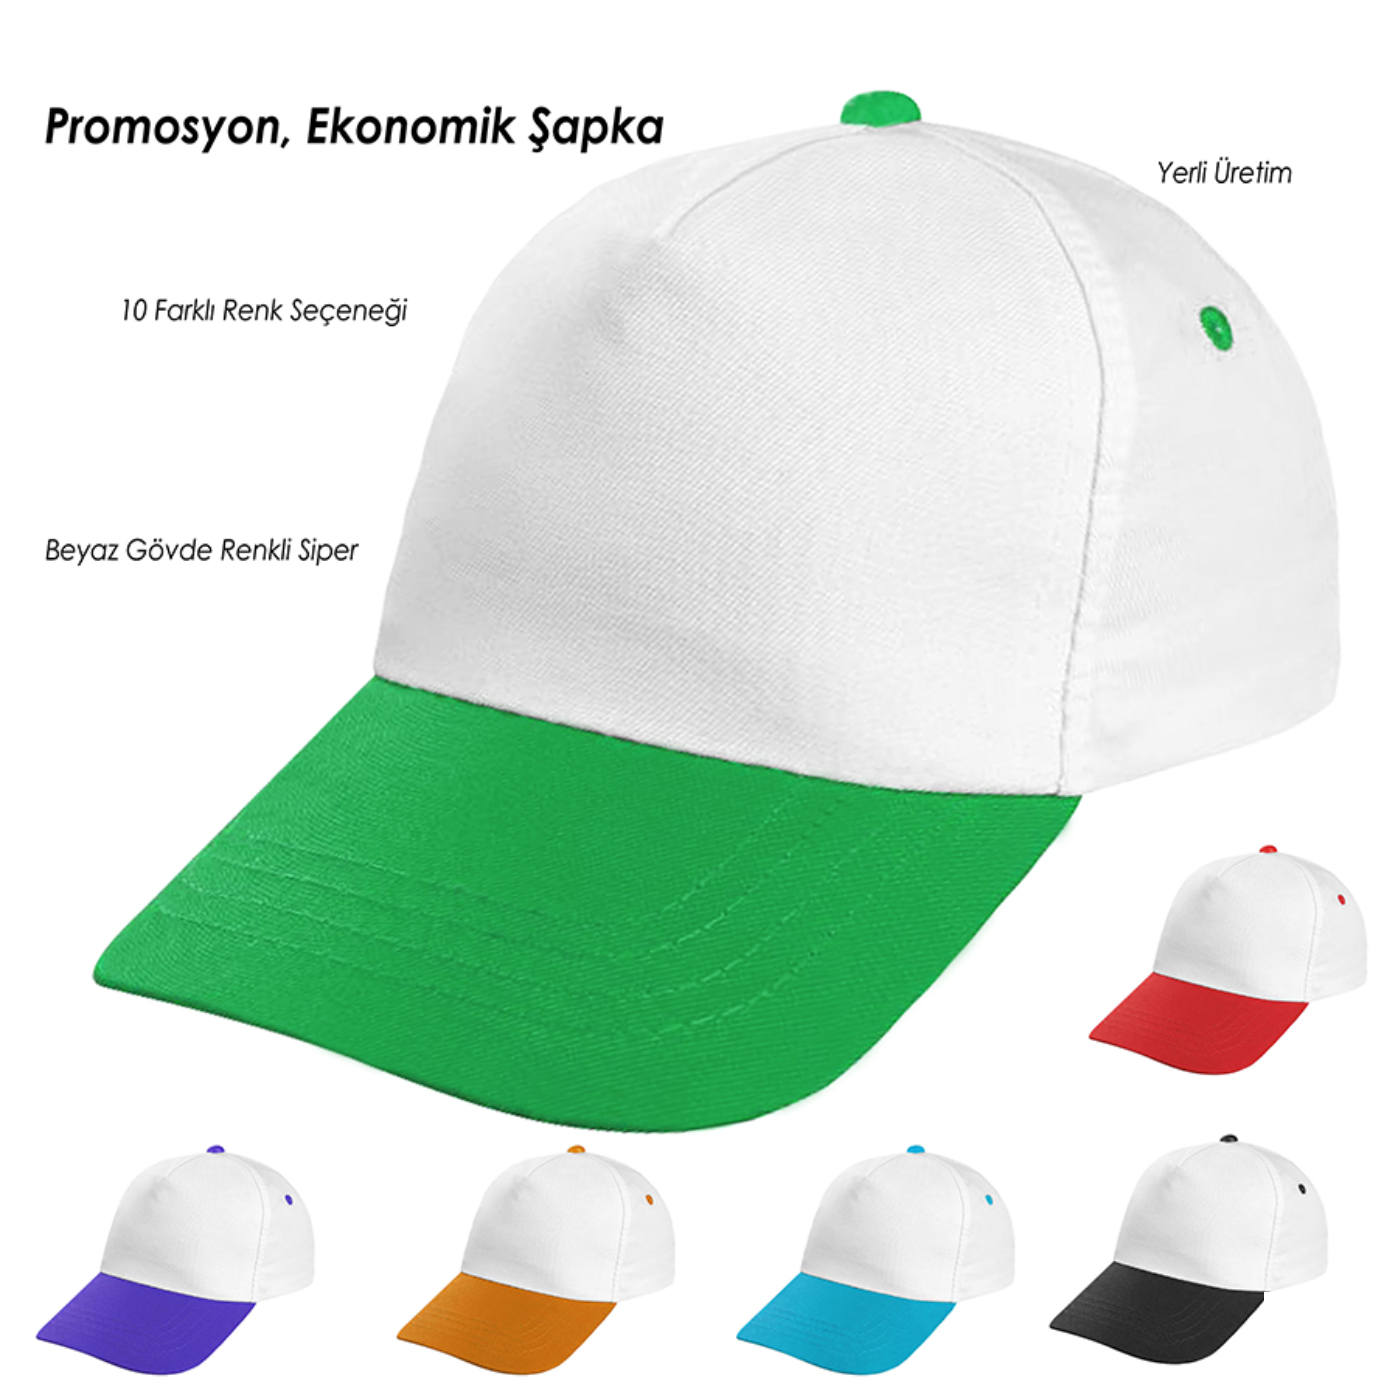 Beyaz Gövde - Yeşil Siper Şapka